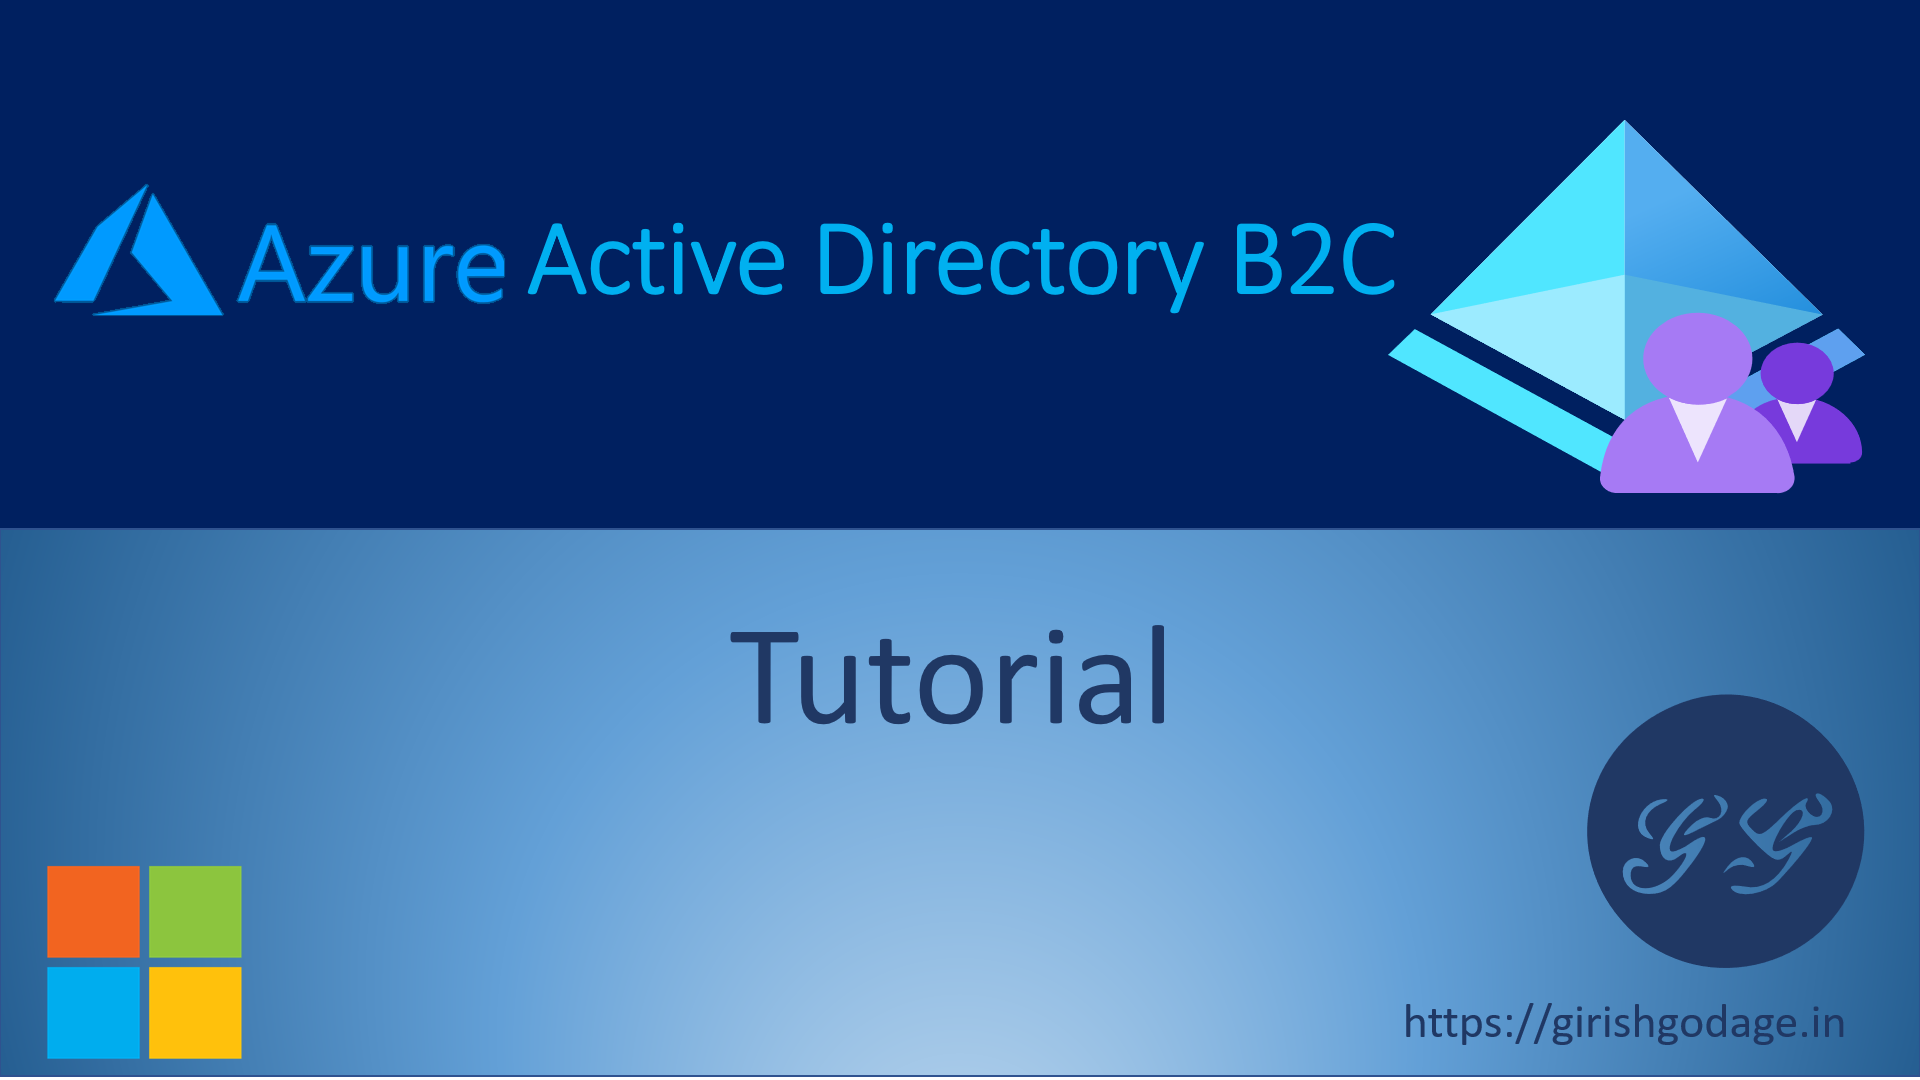 Azure Active Directory B2C